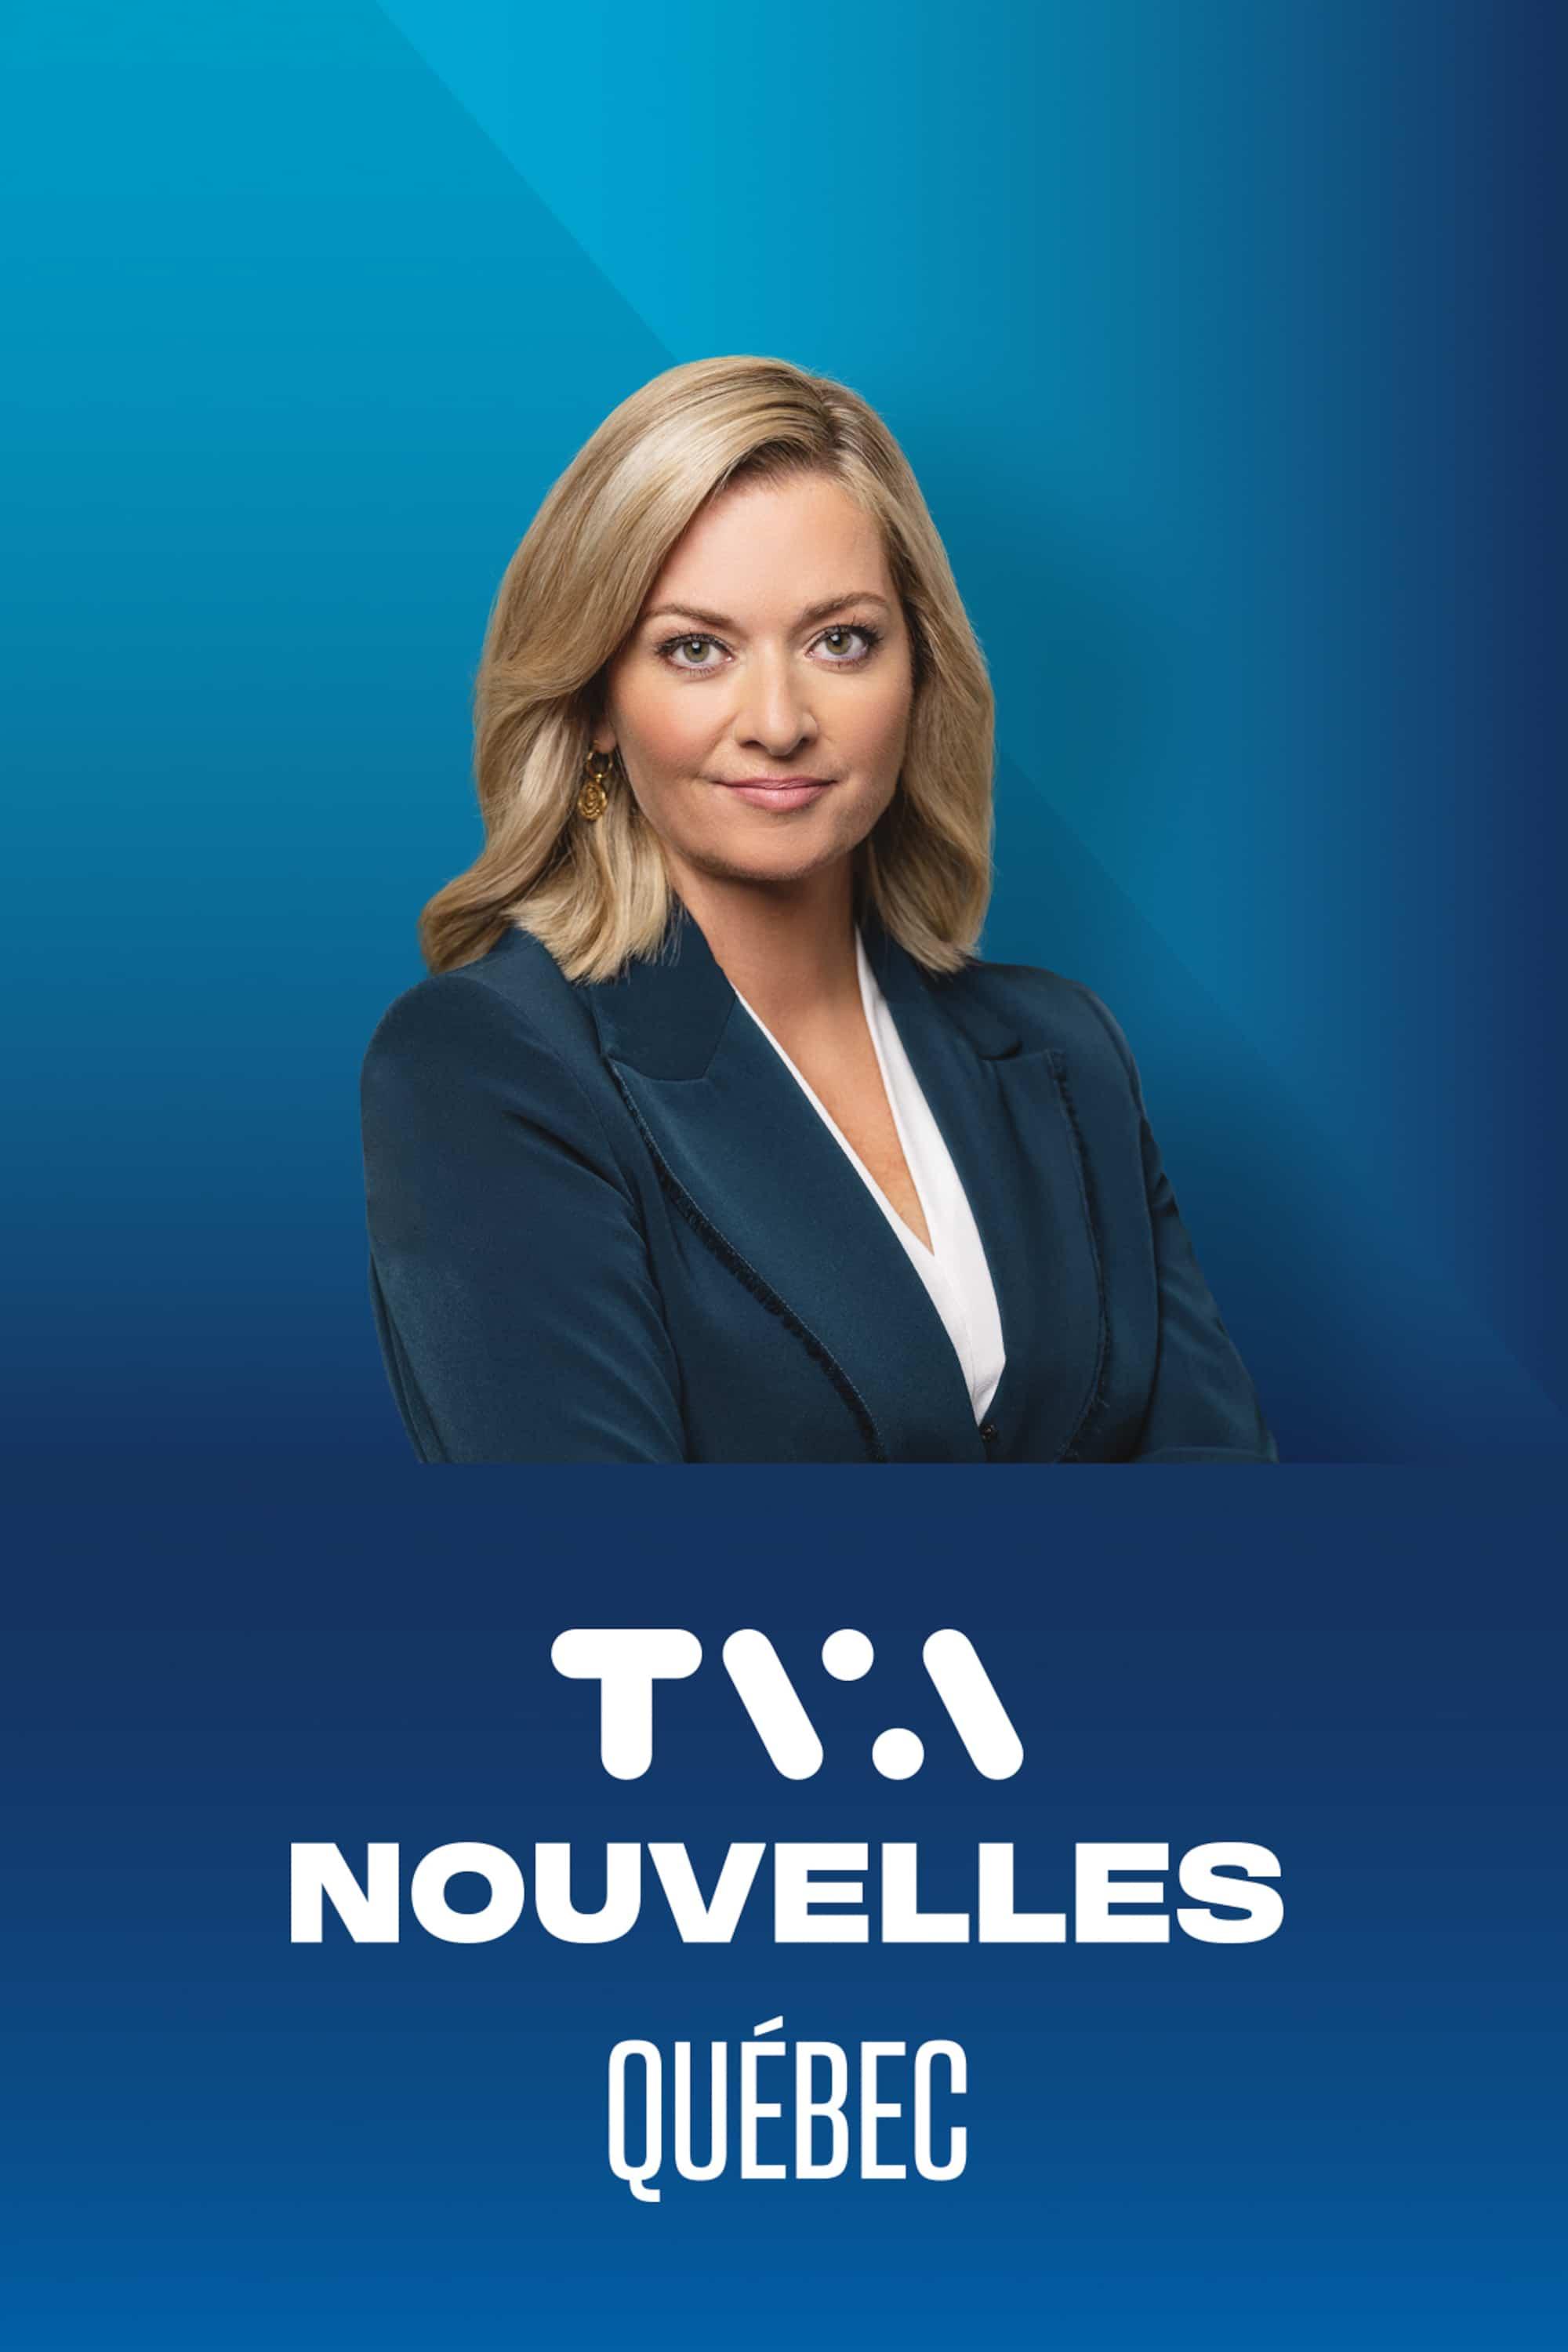 Le TVA Nouvelles Québec